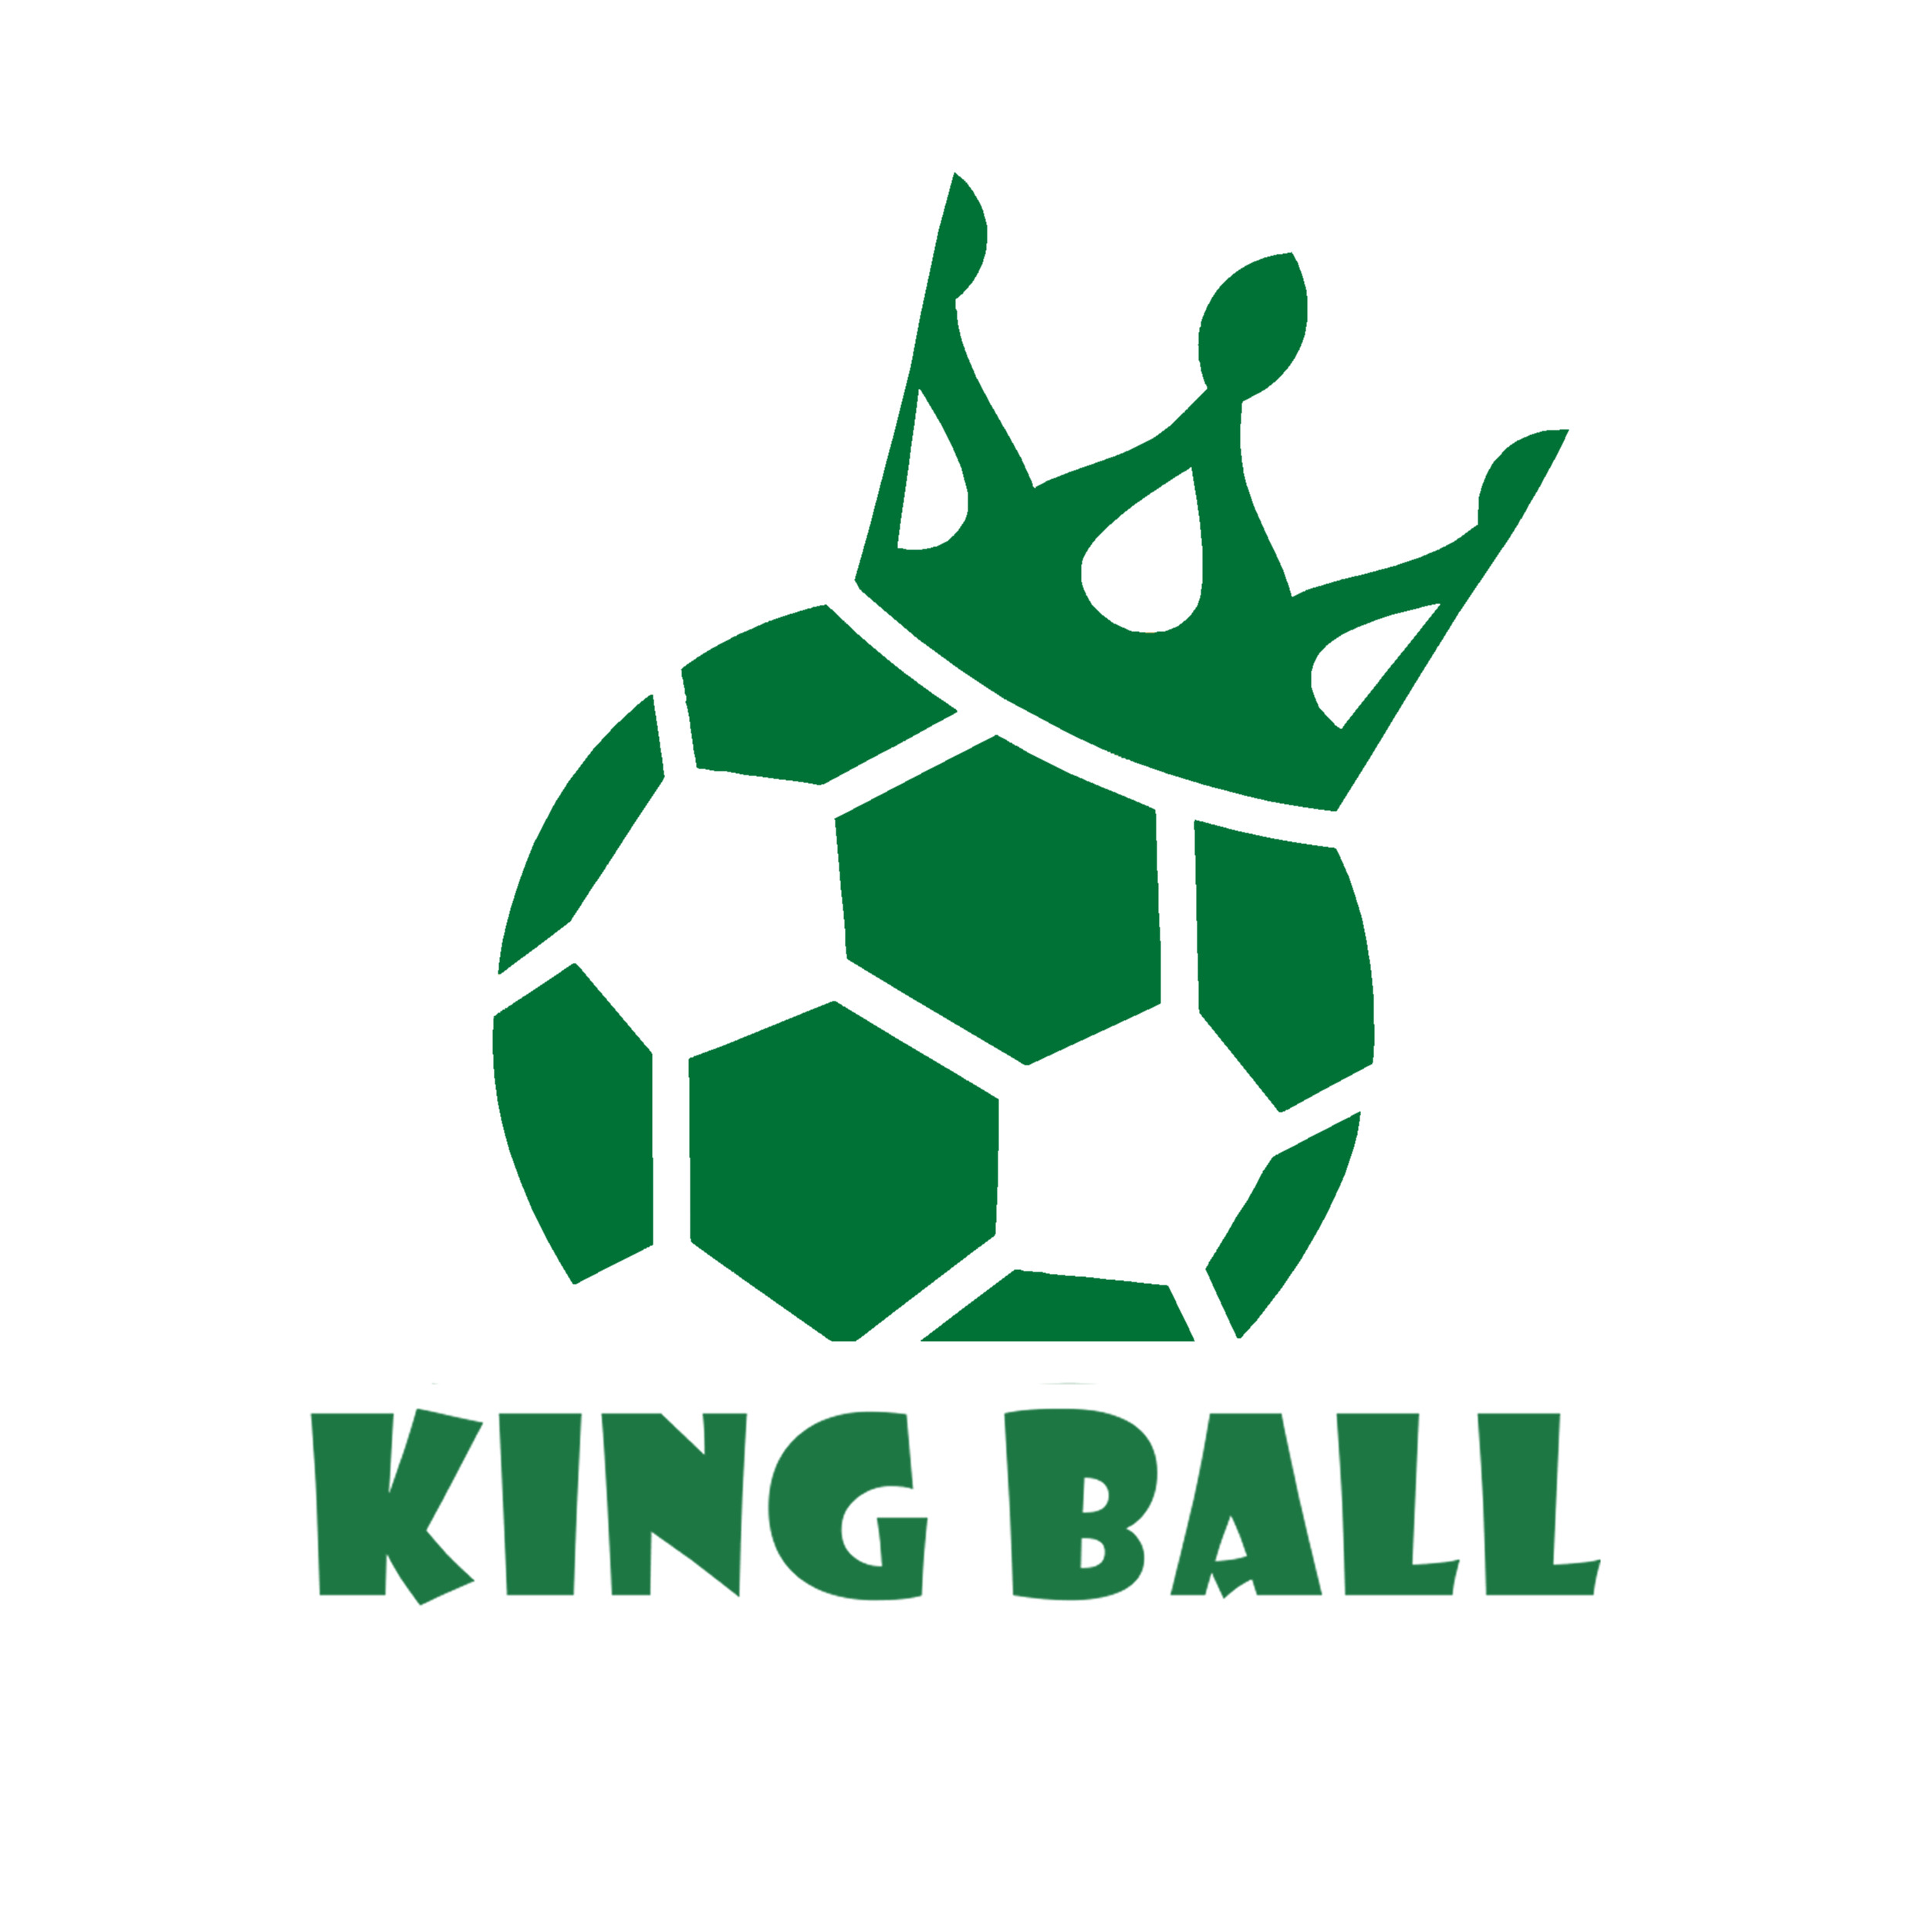 KING BALL